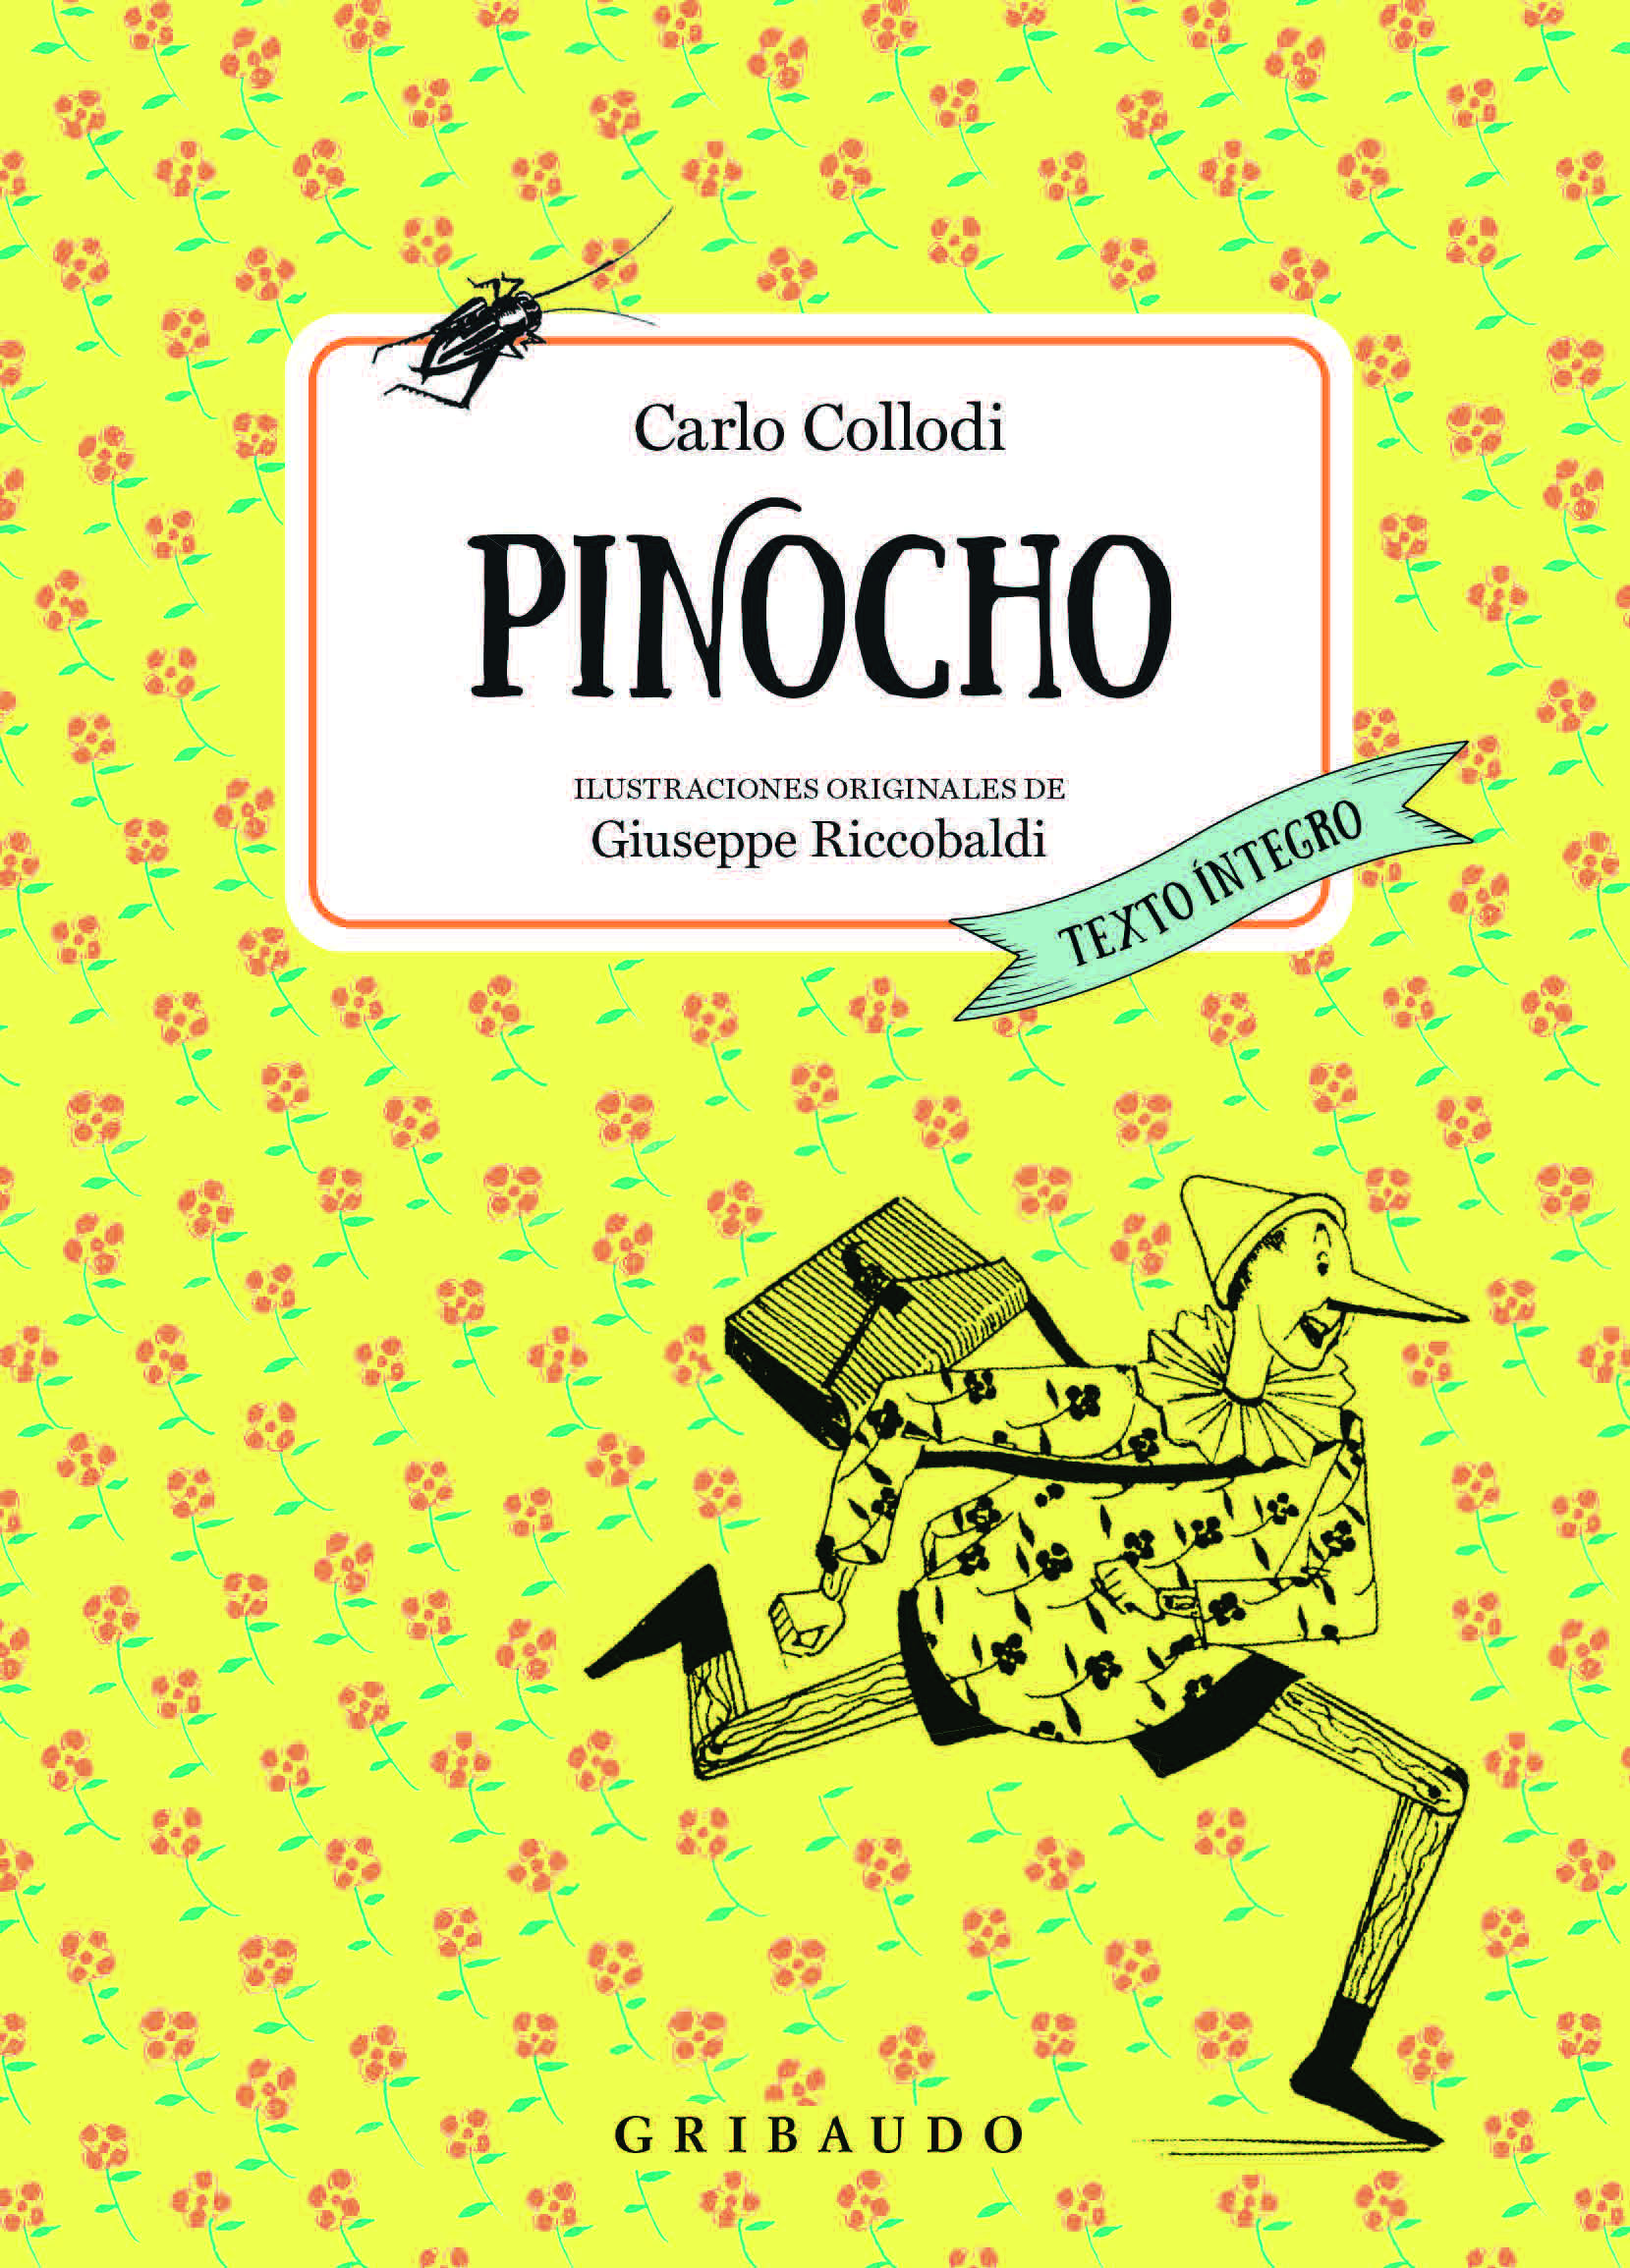 Portada del libro "Las aventuras de Pinocho", de Carlo Collodi, en la edición de Gribaudo. (Cortesía: Editorial Gribaudo).